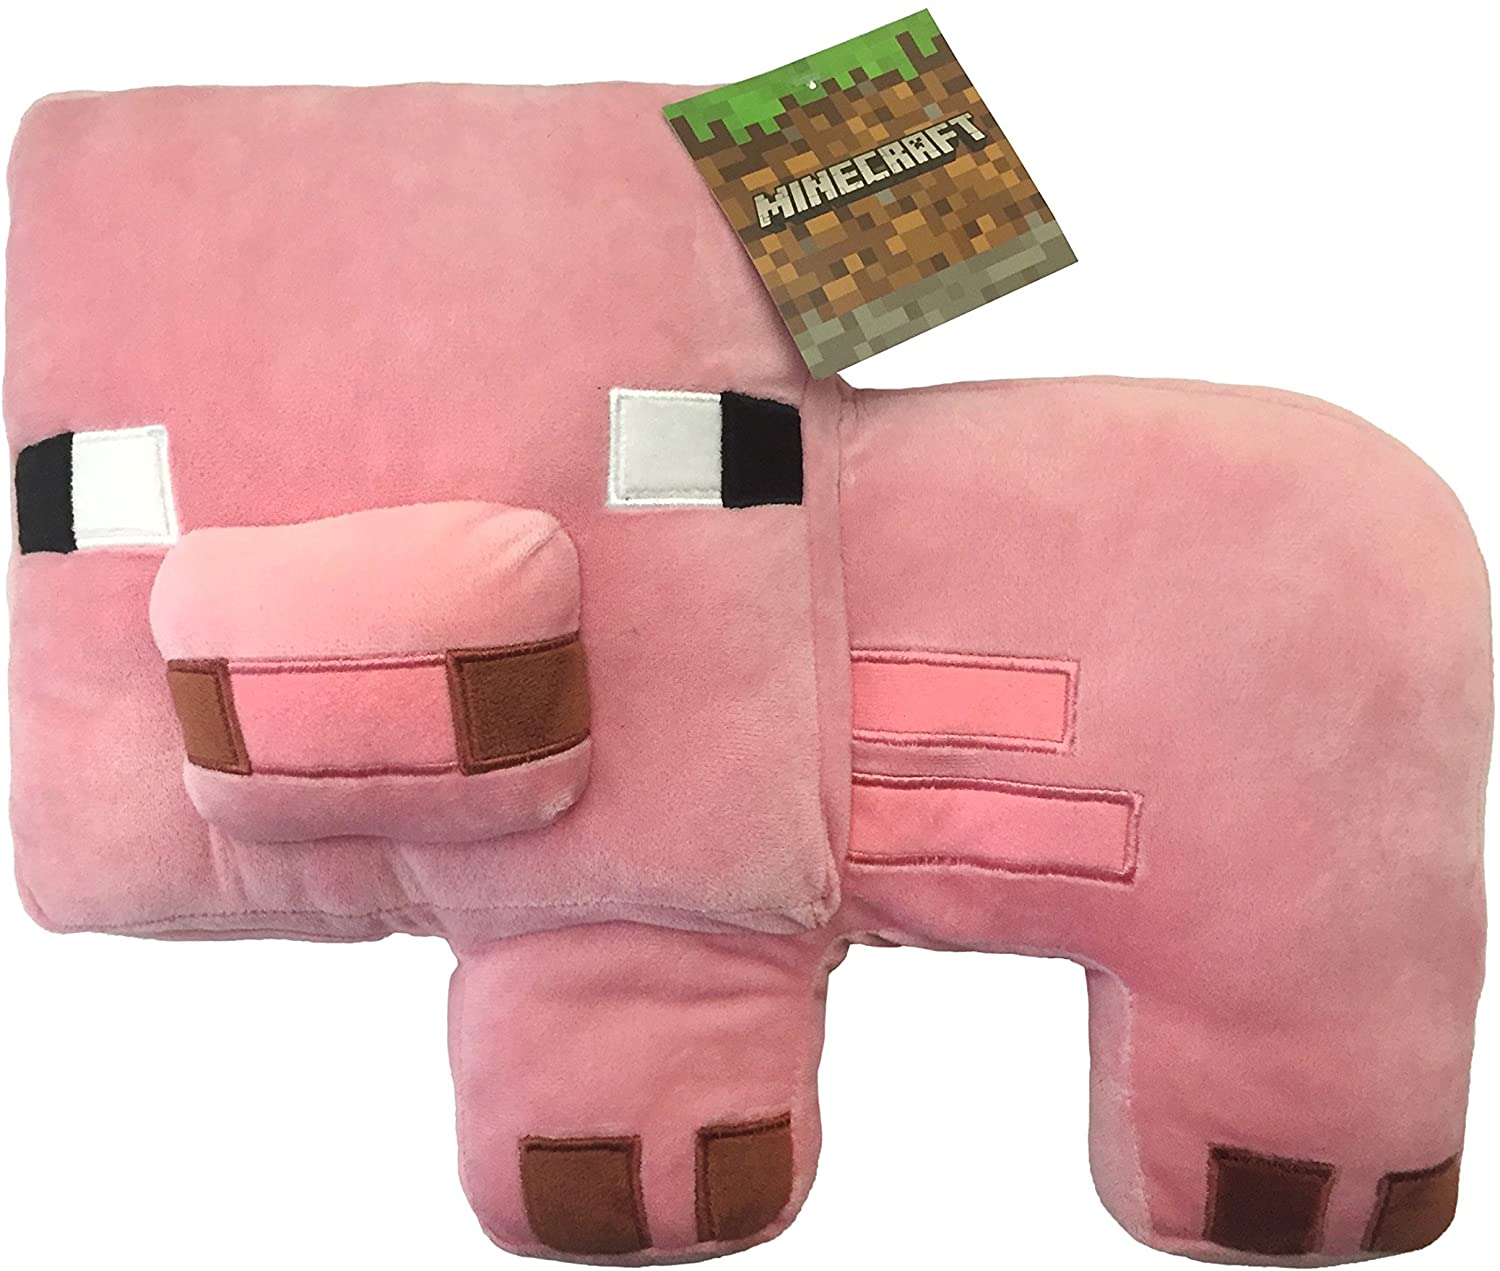 Minecraft Pig Pillow